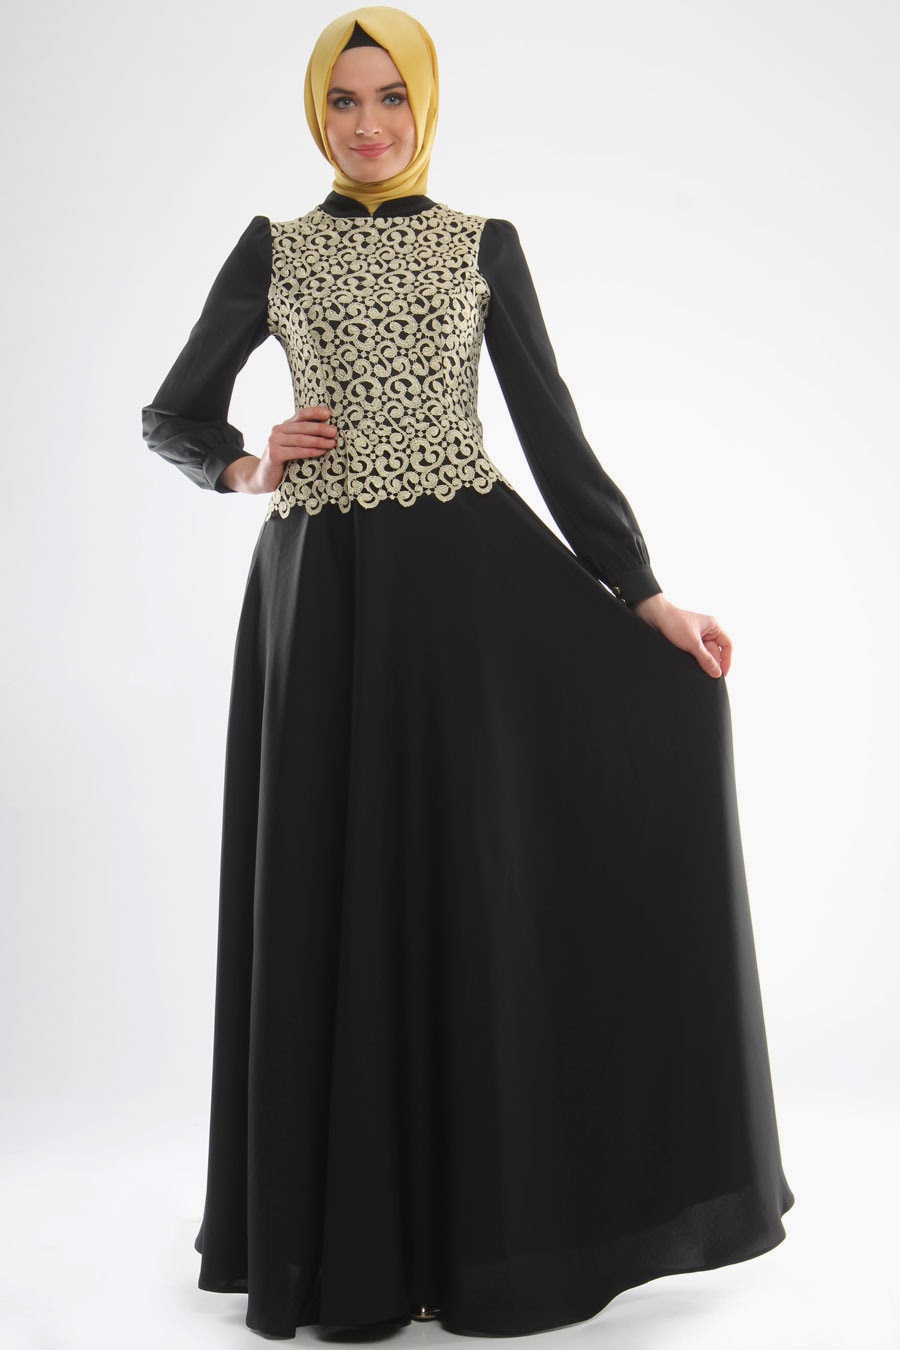 20 Contoh Model Baju Muslim Abaya Terkini dan Terpopuler 